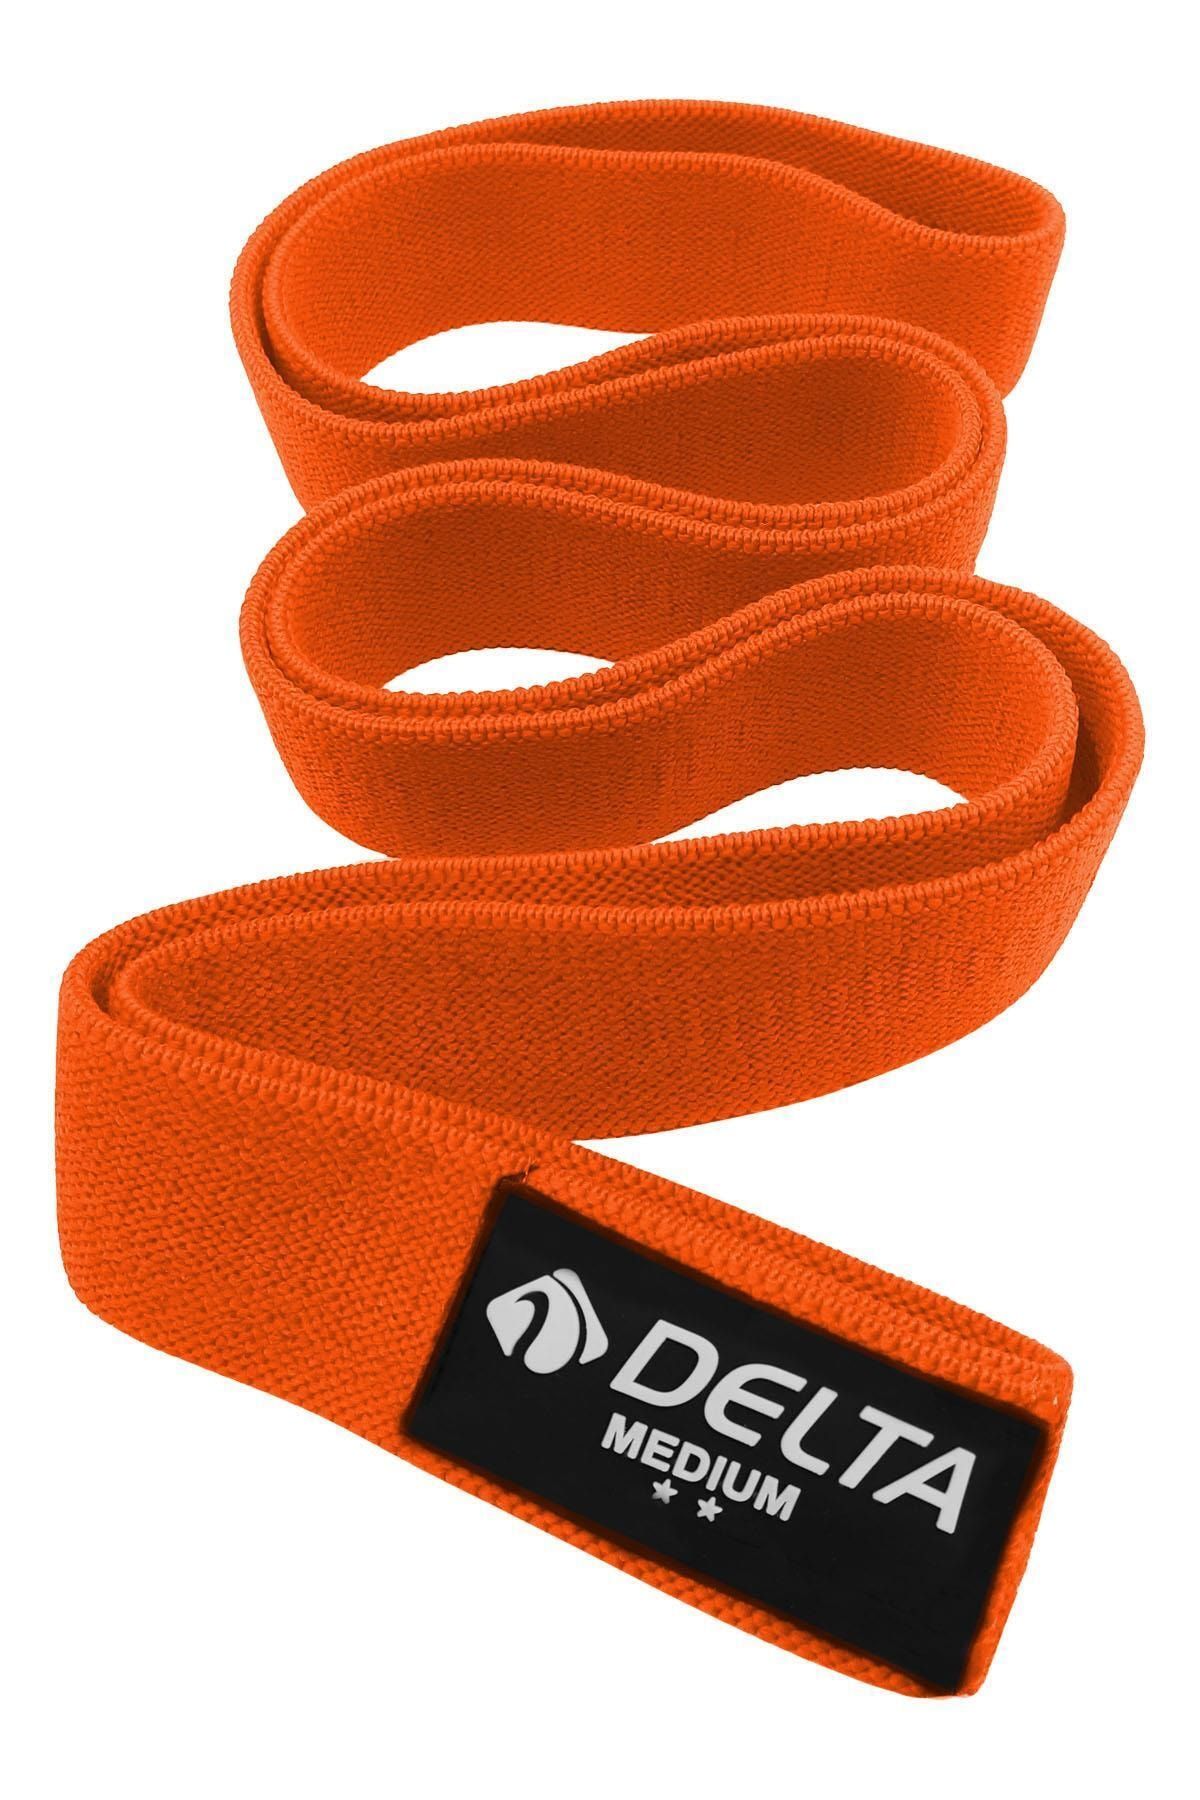 Delta Orta Sert SuperLoop Bant Barfiks Çekmeye Yardımcı Direnç Bandı Lastiği (Uç Kısmı Kapalı)